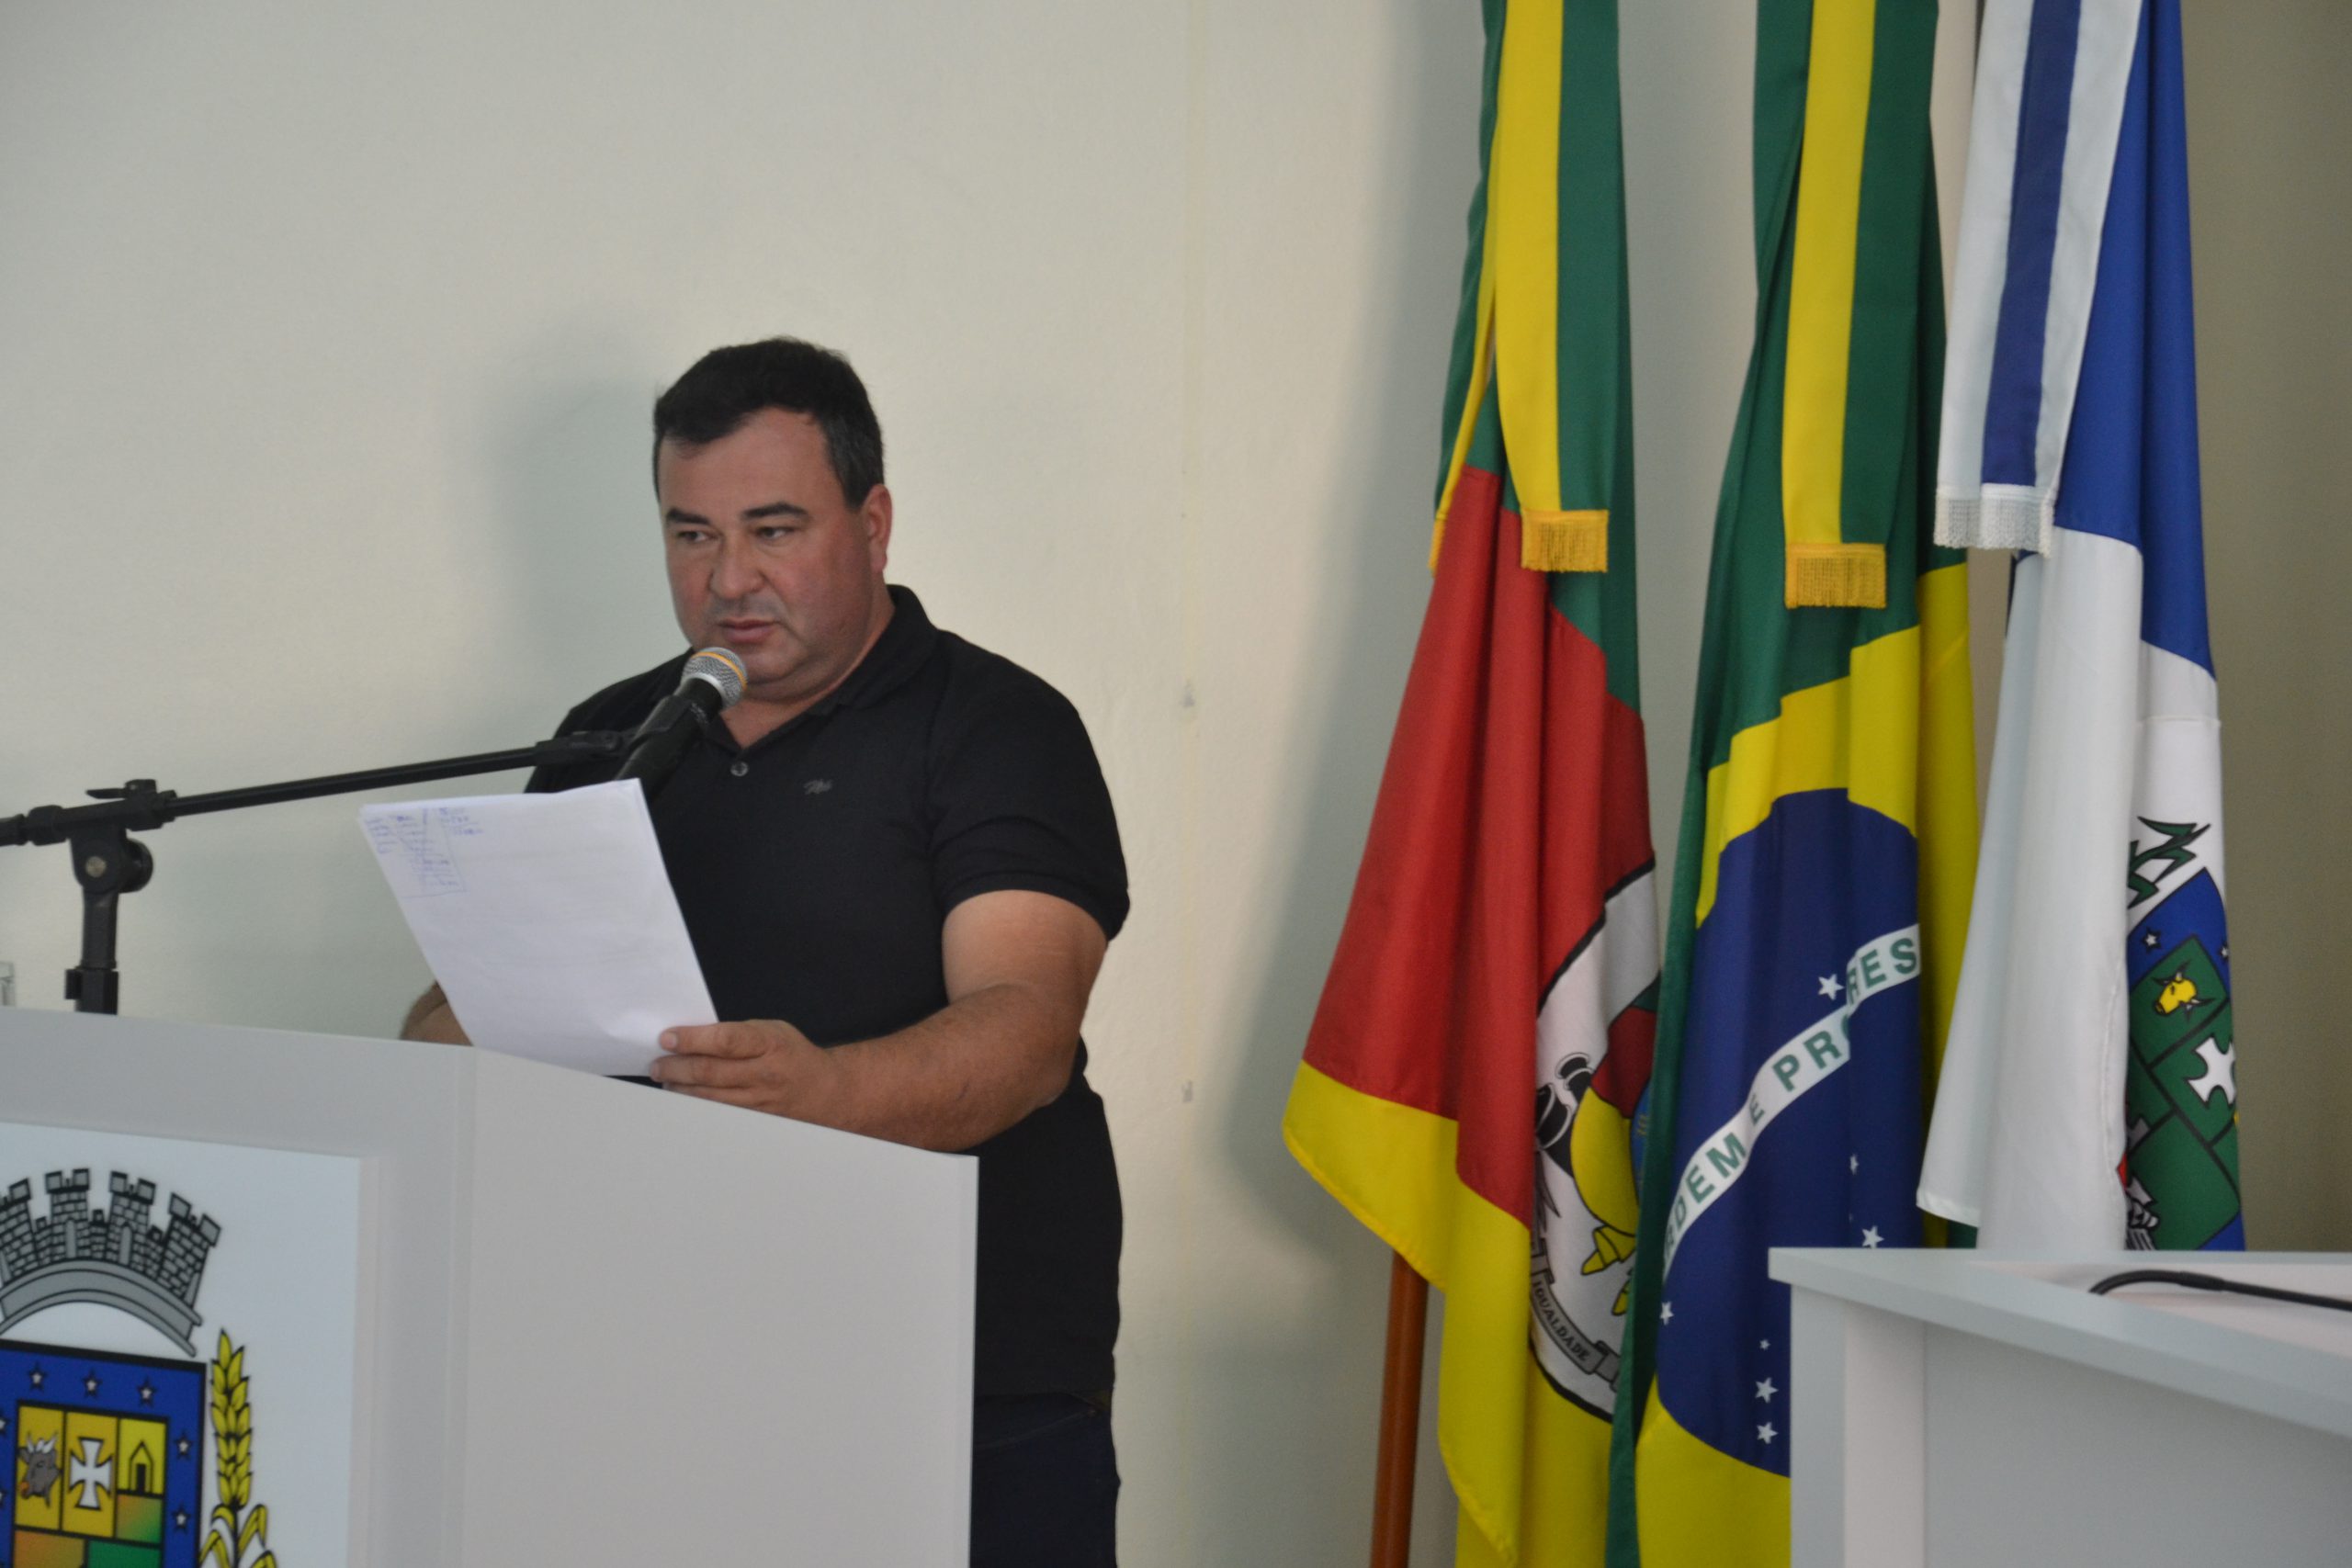 Bacana visa garantir melhores condições aos acompanhantes de pacientes internados fora do município